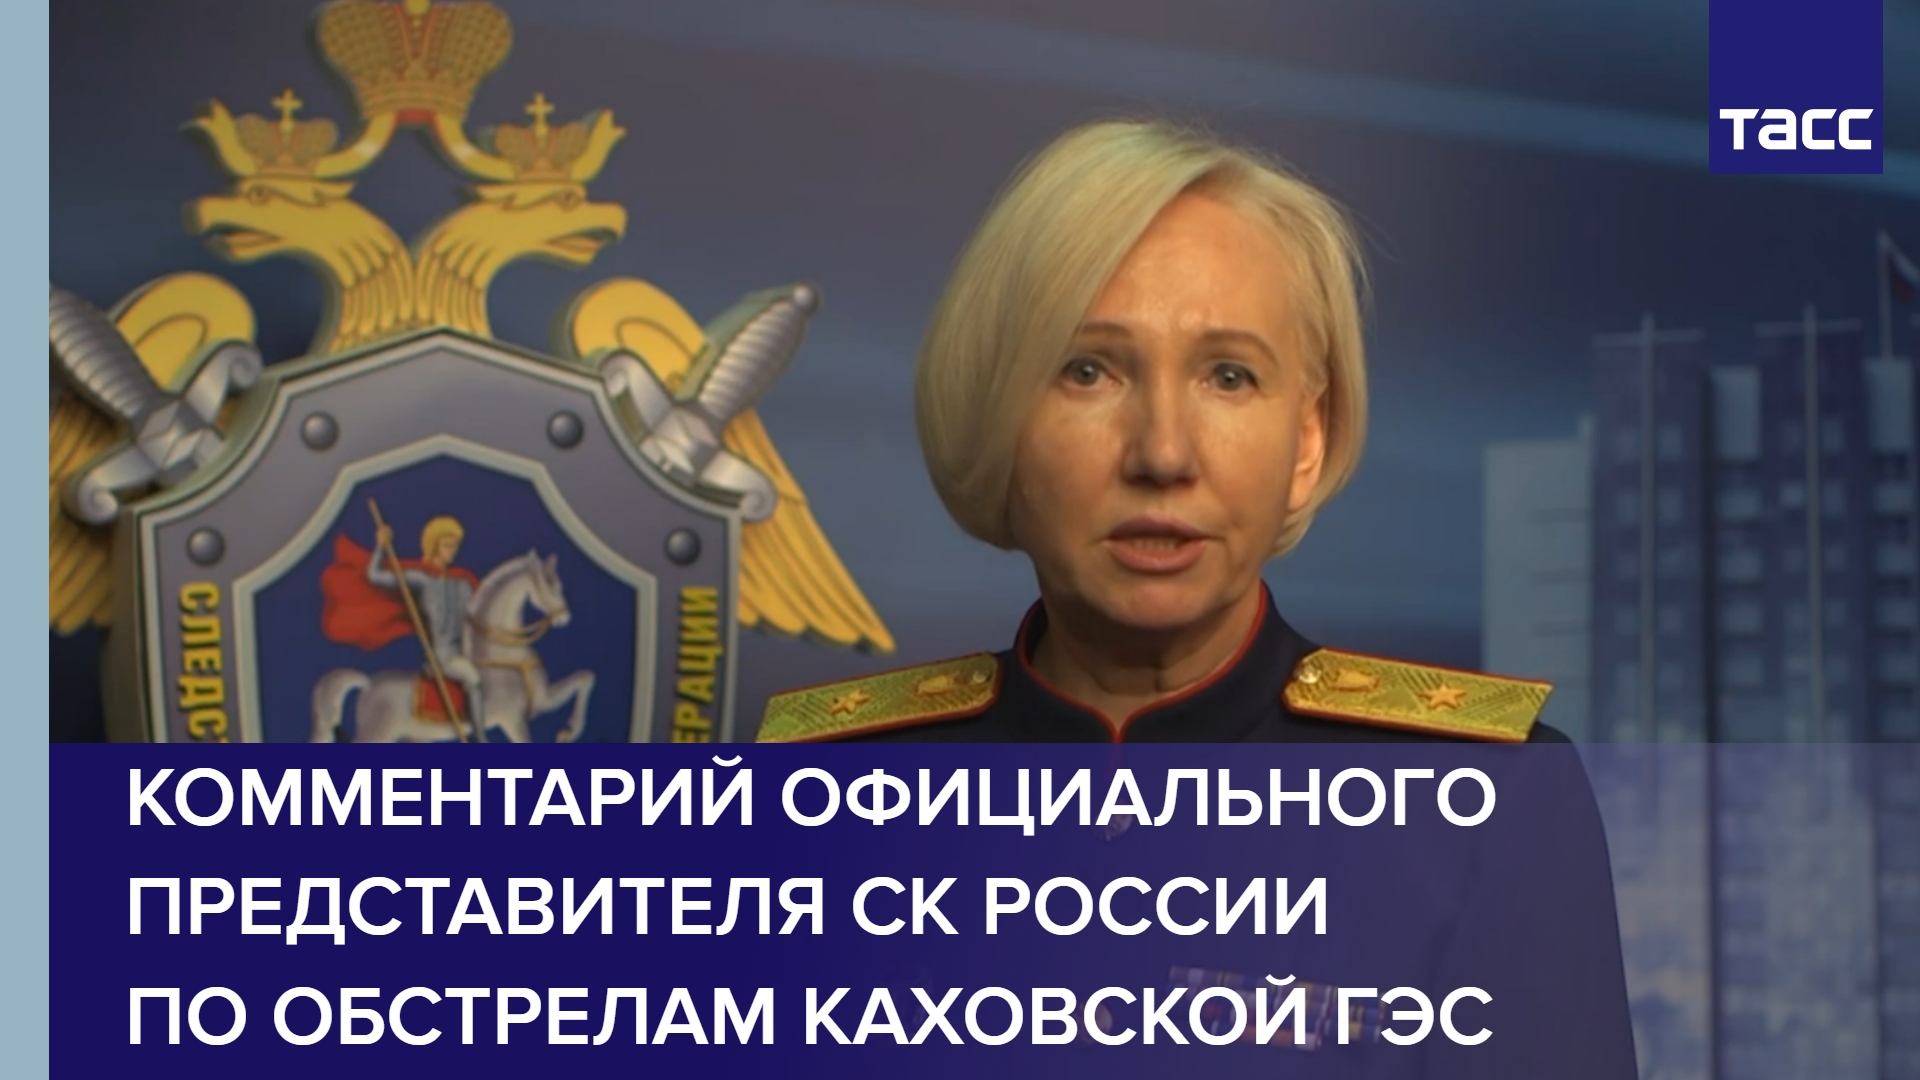 Комментарий официального представителя СК России по обстрелам Каховской ГЭС